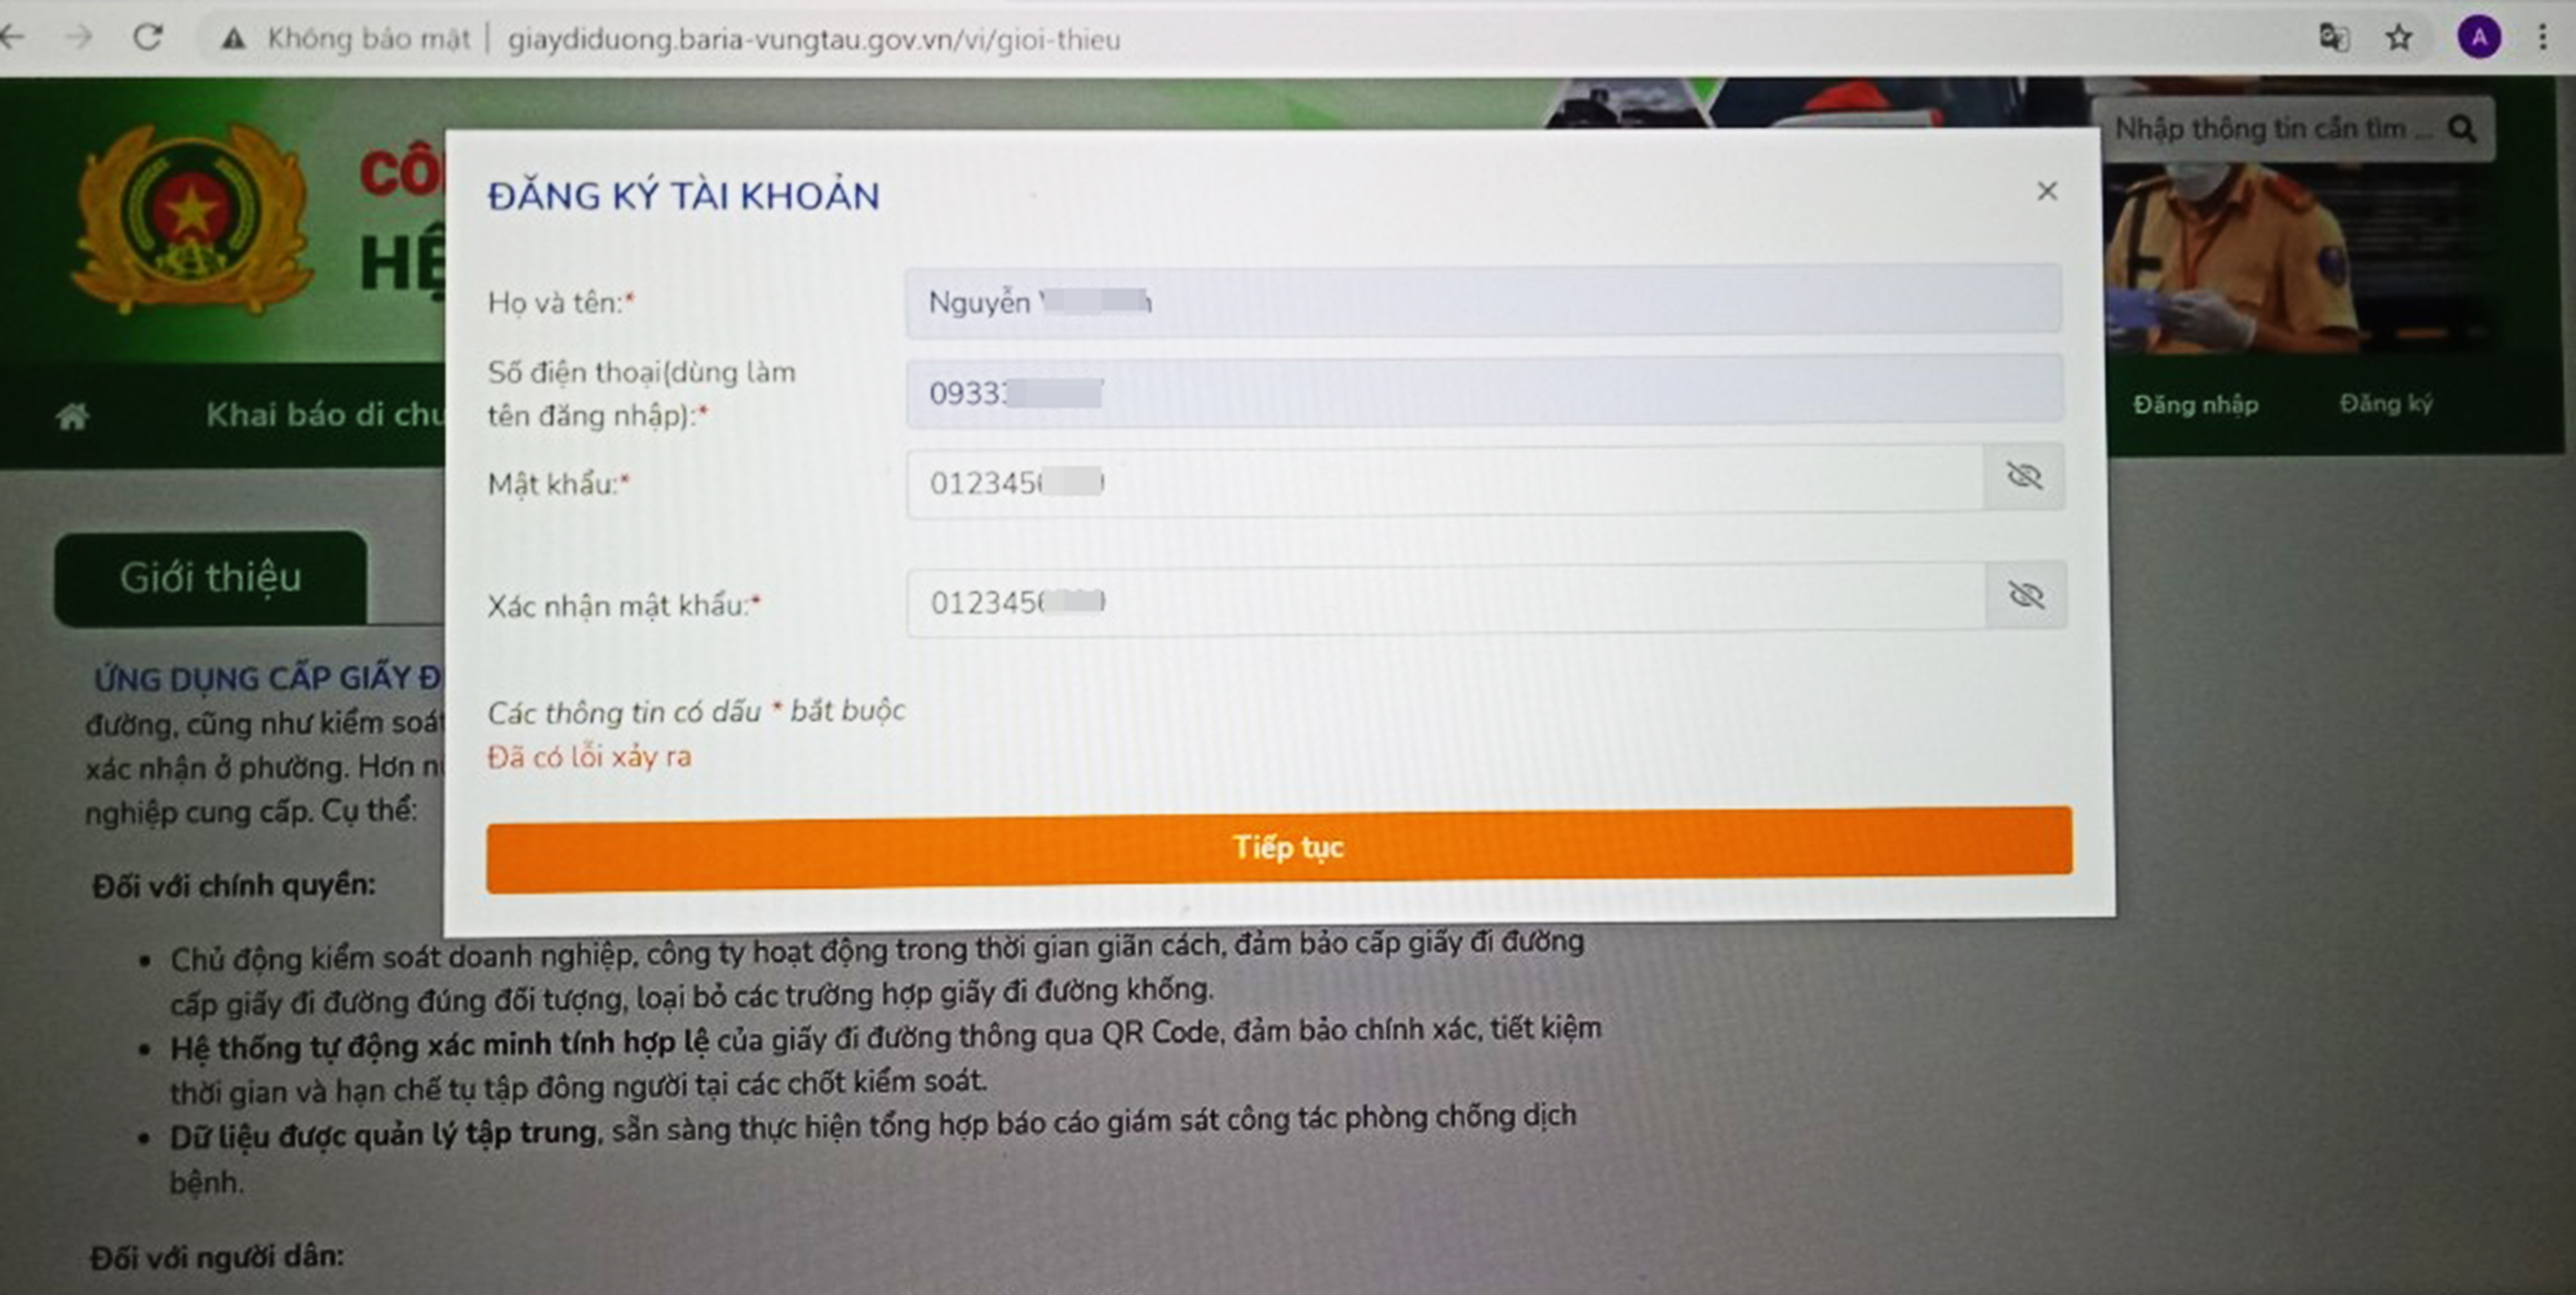 Ngày 22/9, nhiều người vào website: https://giaydiduong.baria-vungtau.gov.vn để đăng ký cấp “Giấy đi đường” trực tuyến nhưng bị lỗi.